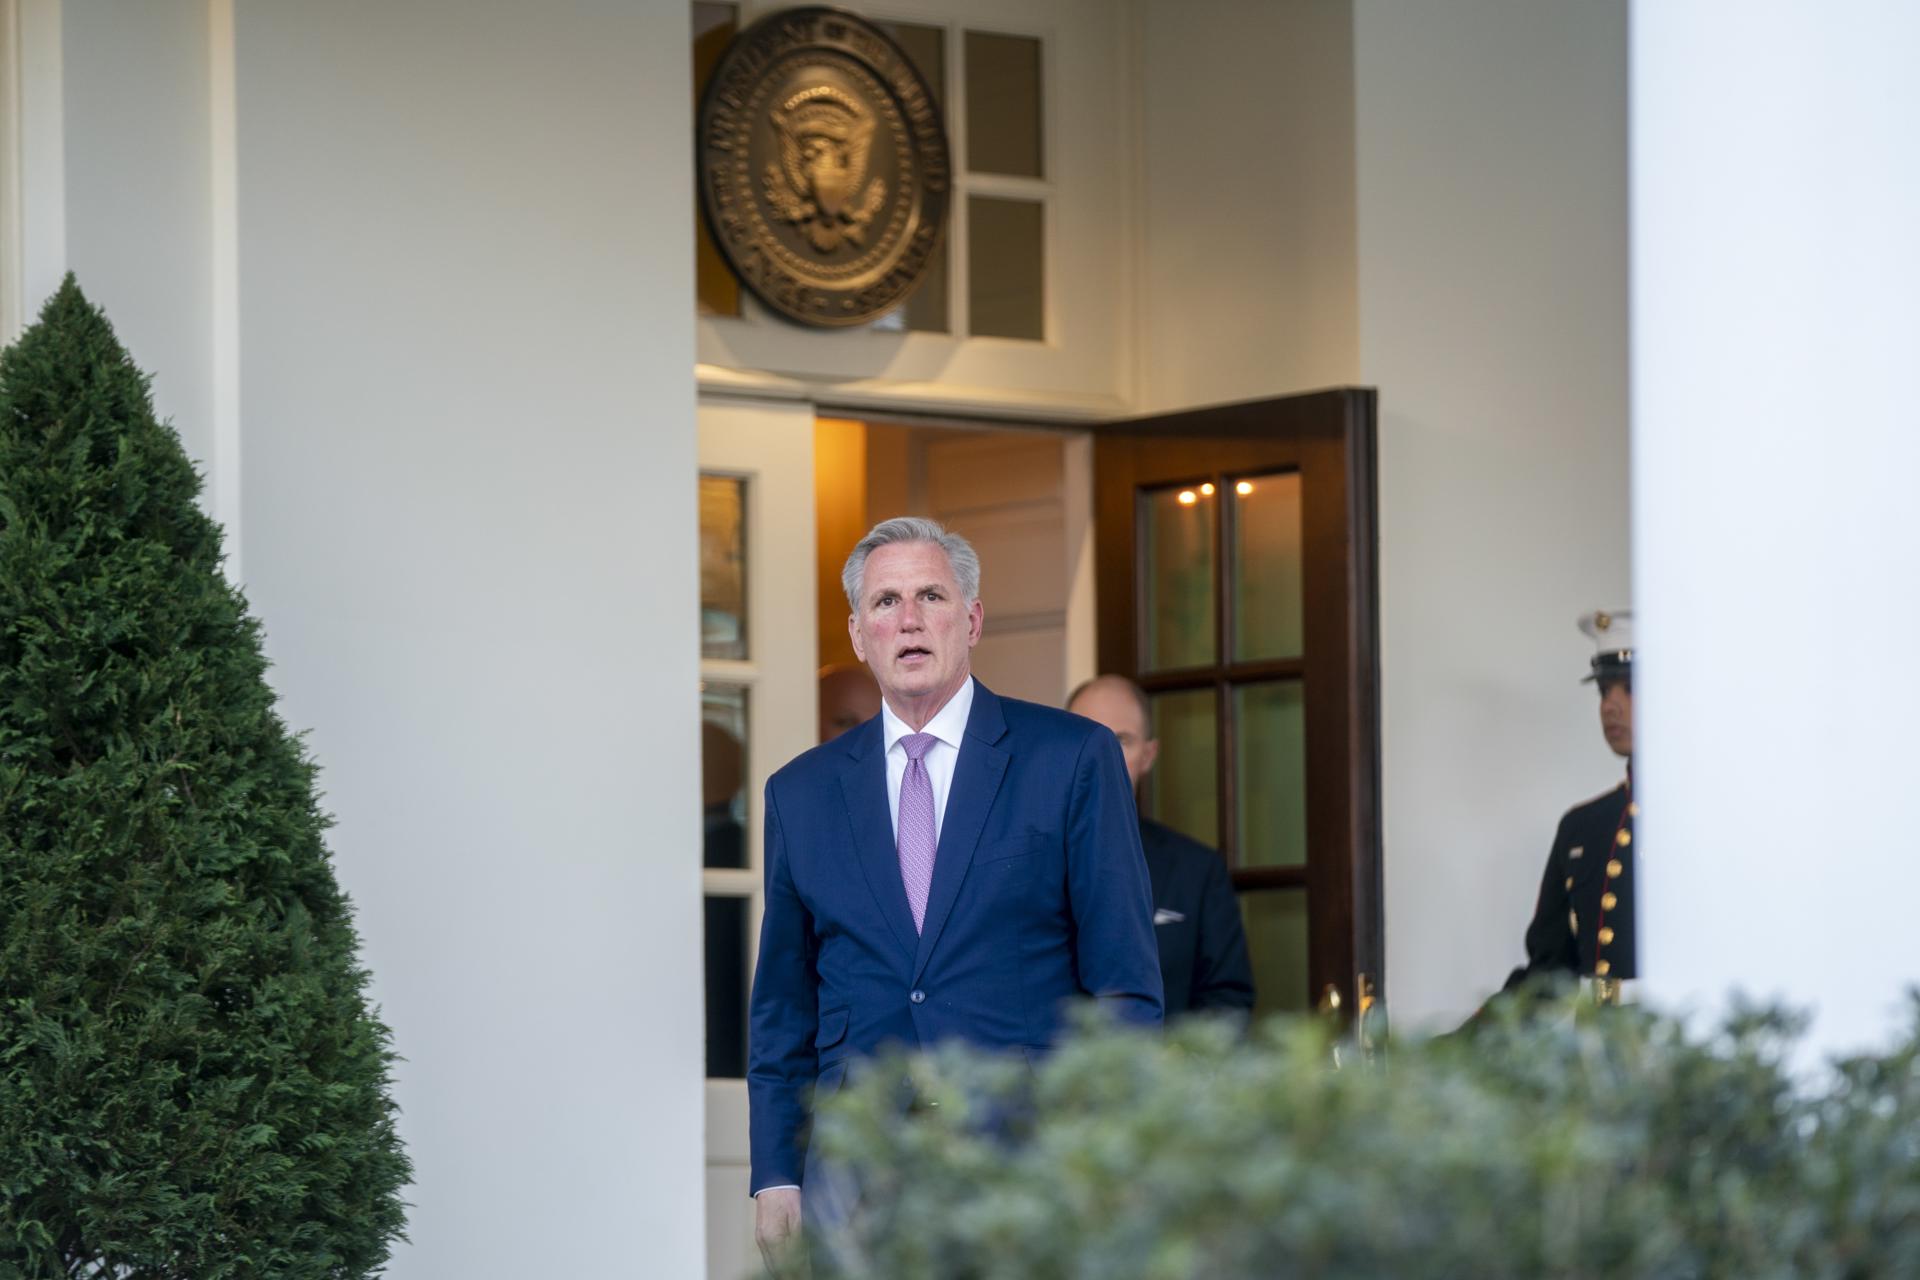 El jefe de la Cámara Baja de EE.UU., el republicano Kevin McCarthy, sale de la Casa Blanca tras sostener una reunión con el presidente Joe Biden, el 1 de febrero de 2023. EFE/Shawn Thew